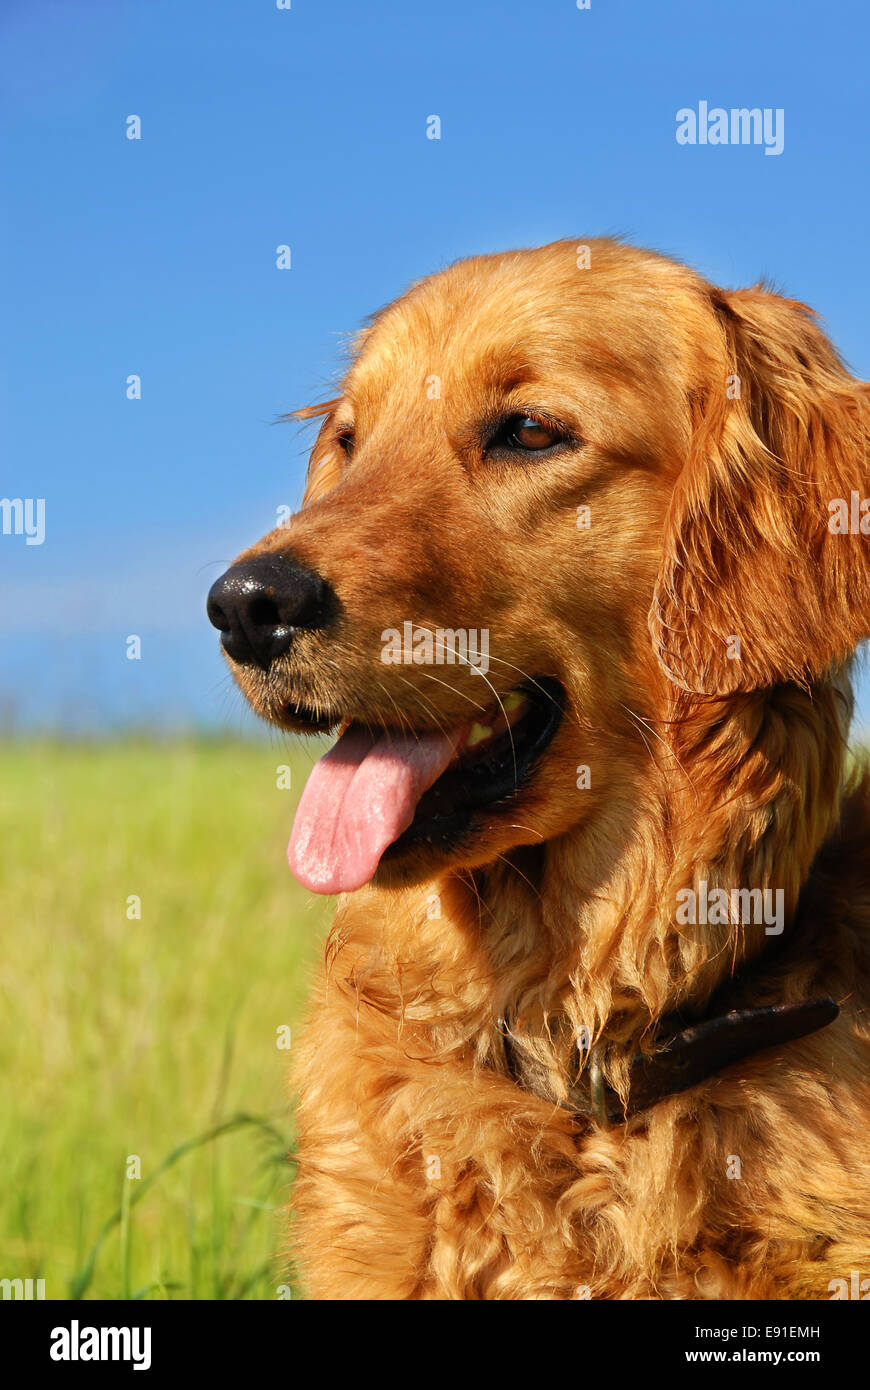 Golden retriever dog portrait Banque D'Images